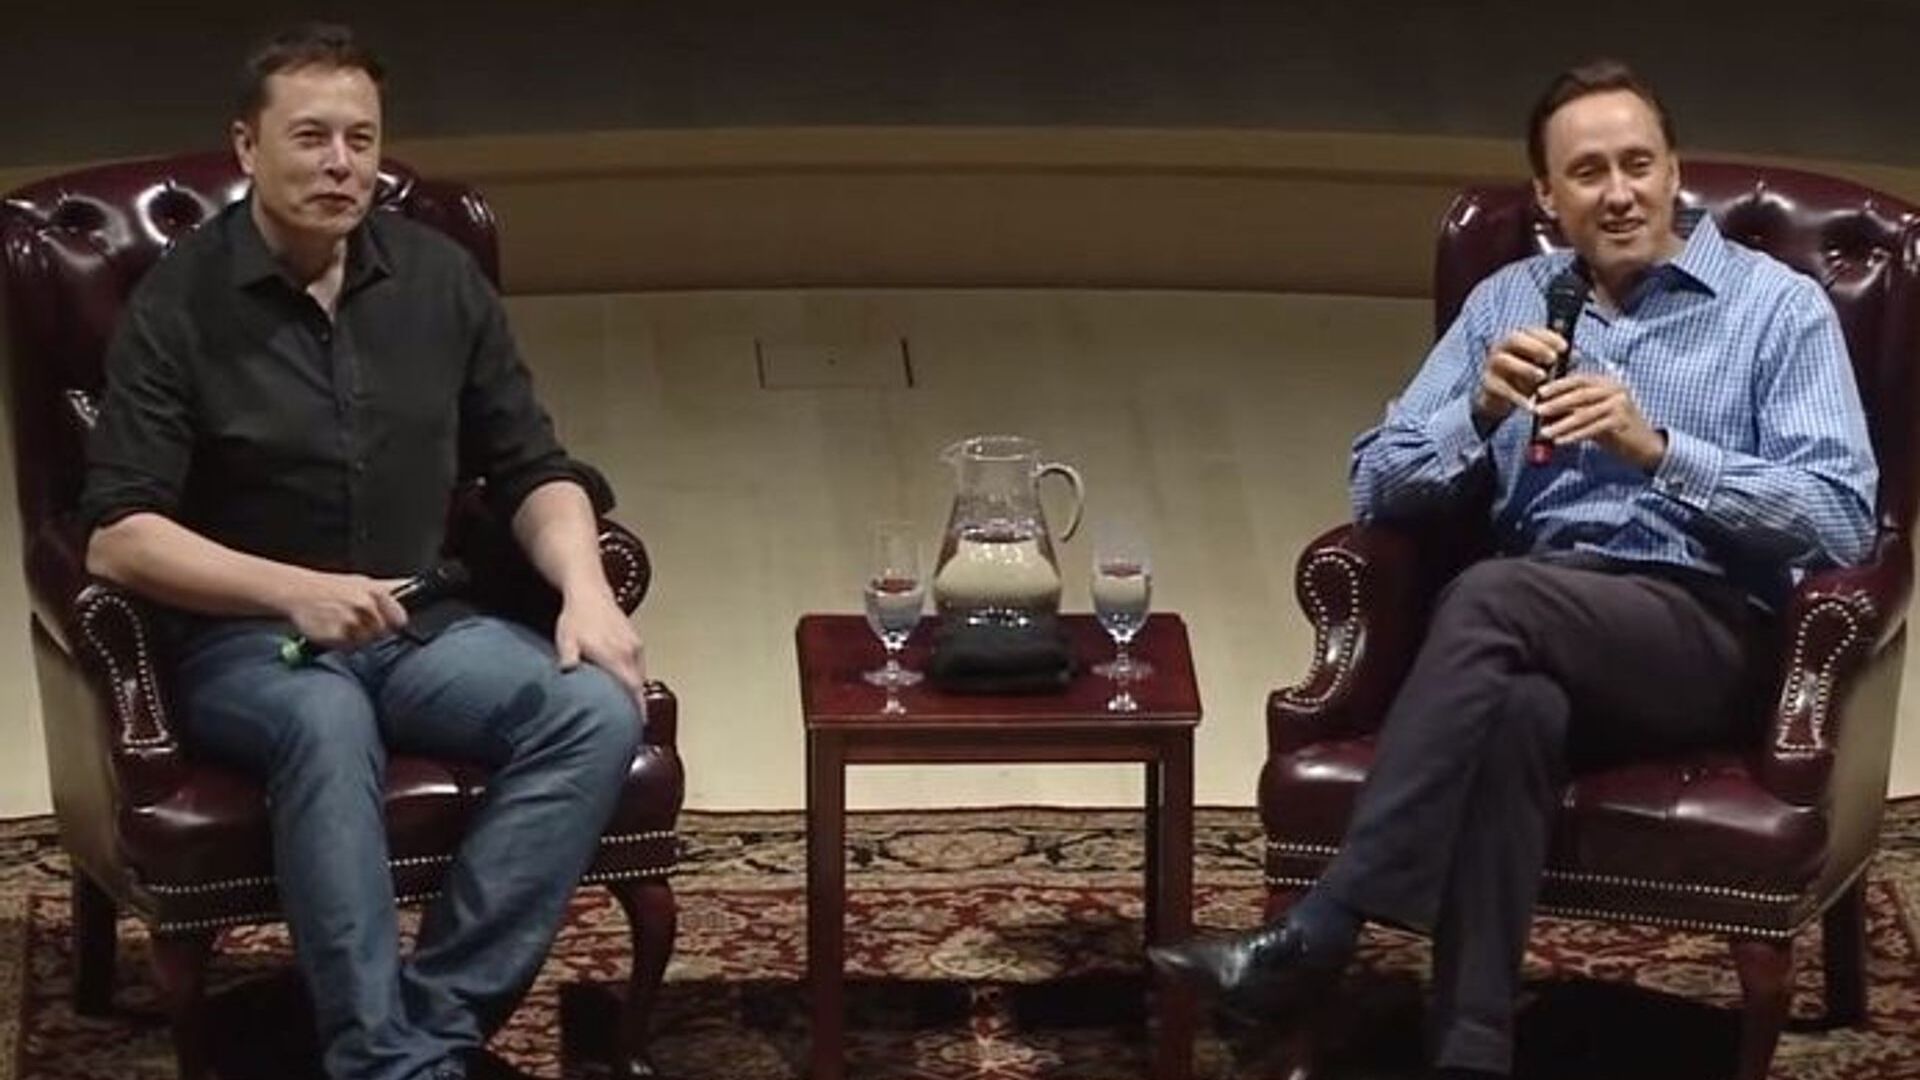 Conversa entre o empreendedor visionário Elon Musk e o famoso investidor Steve Jurvetson